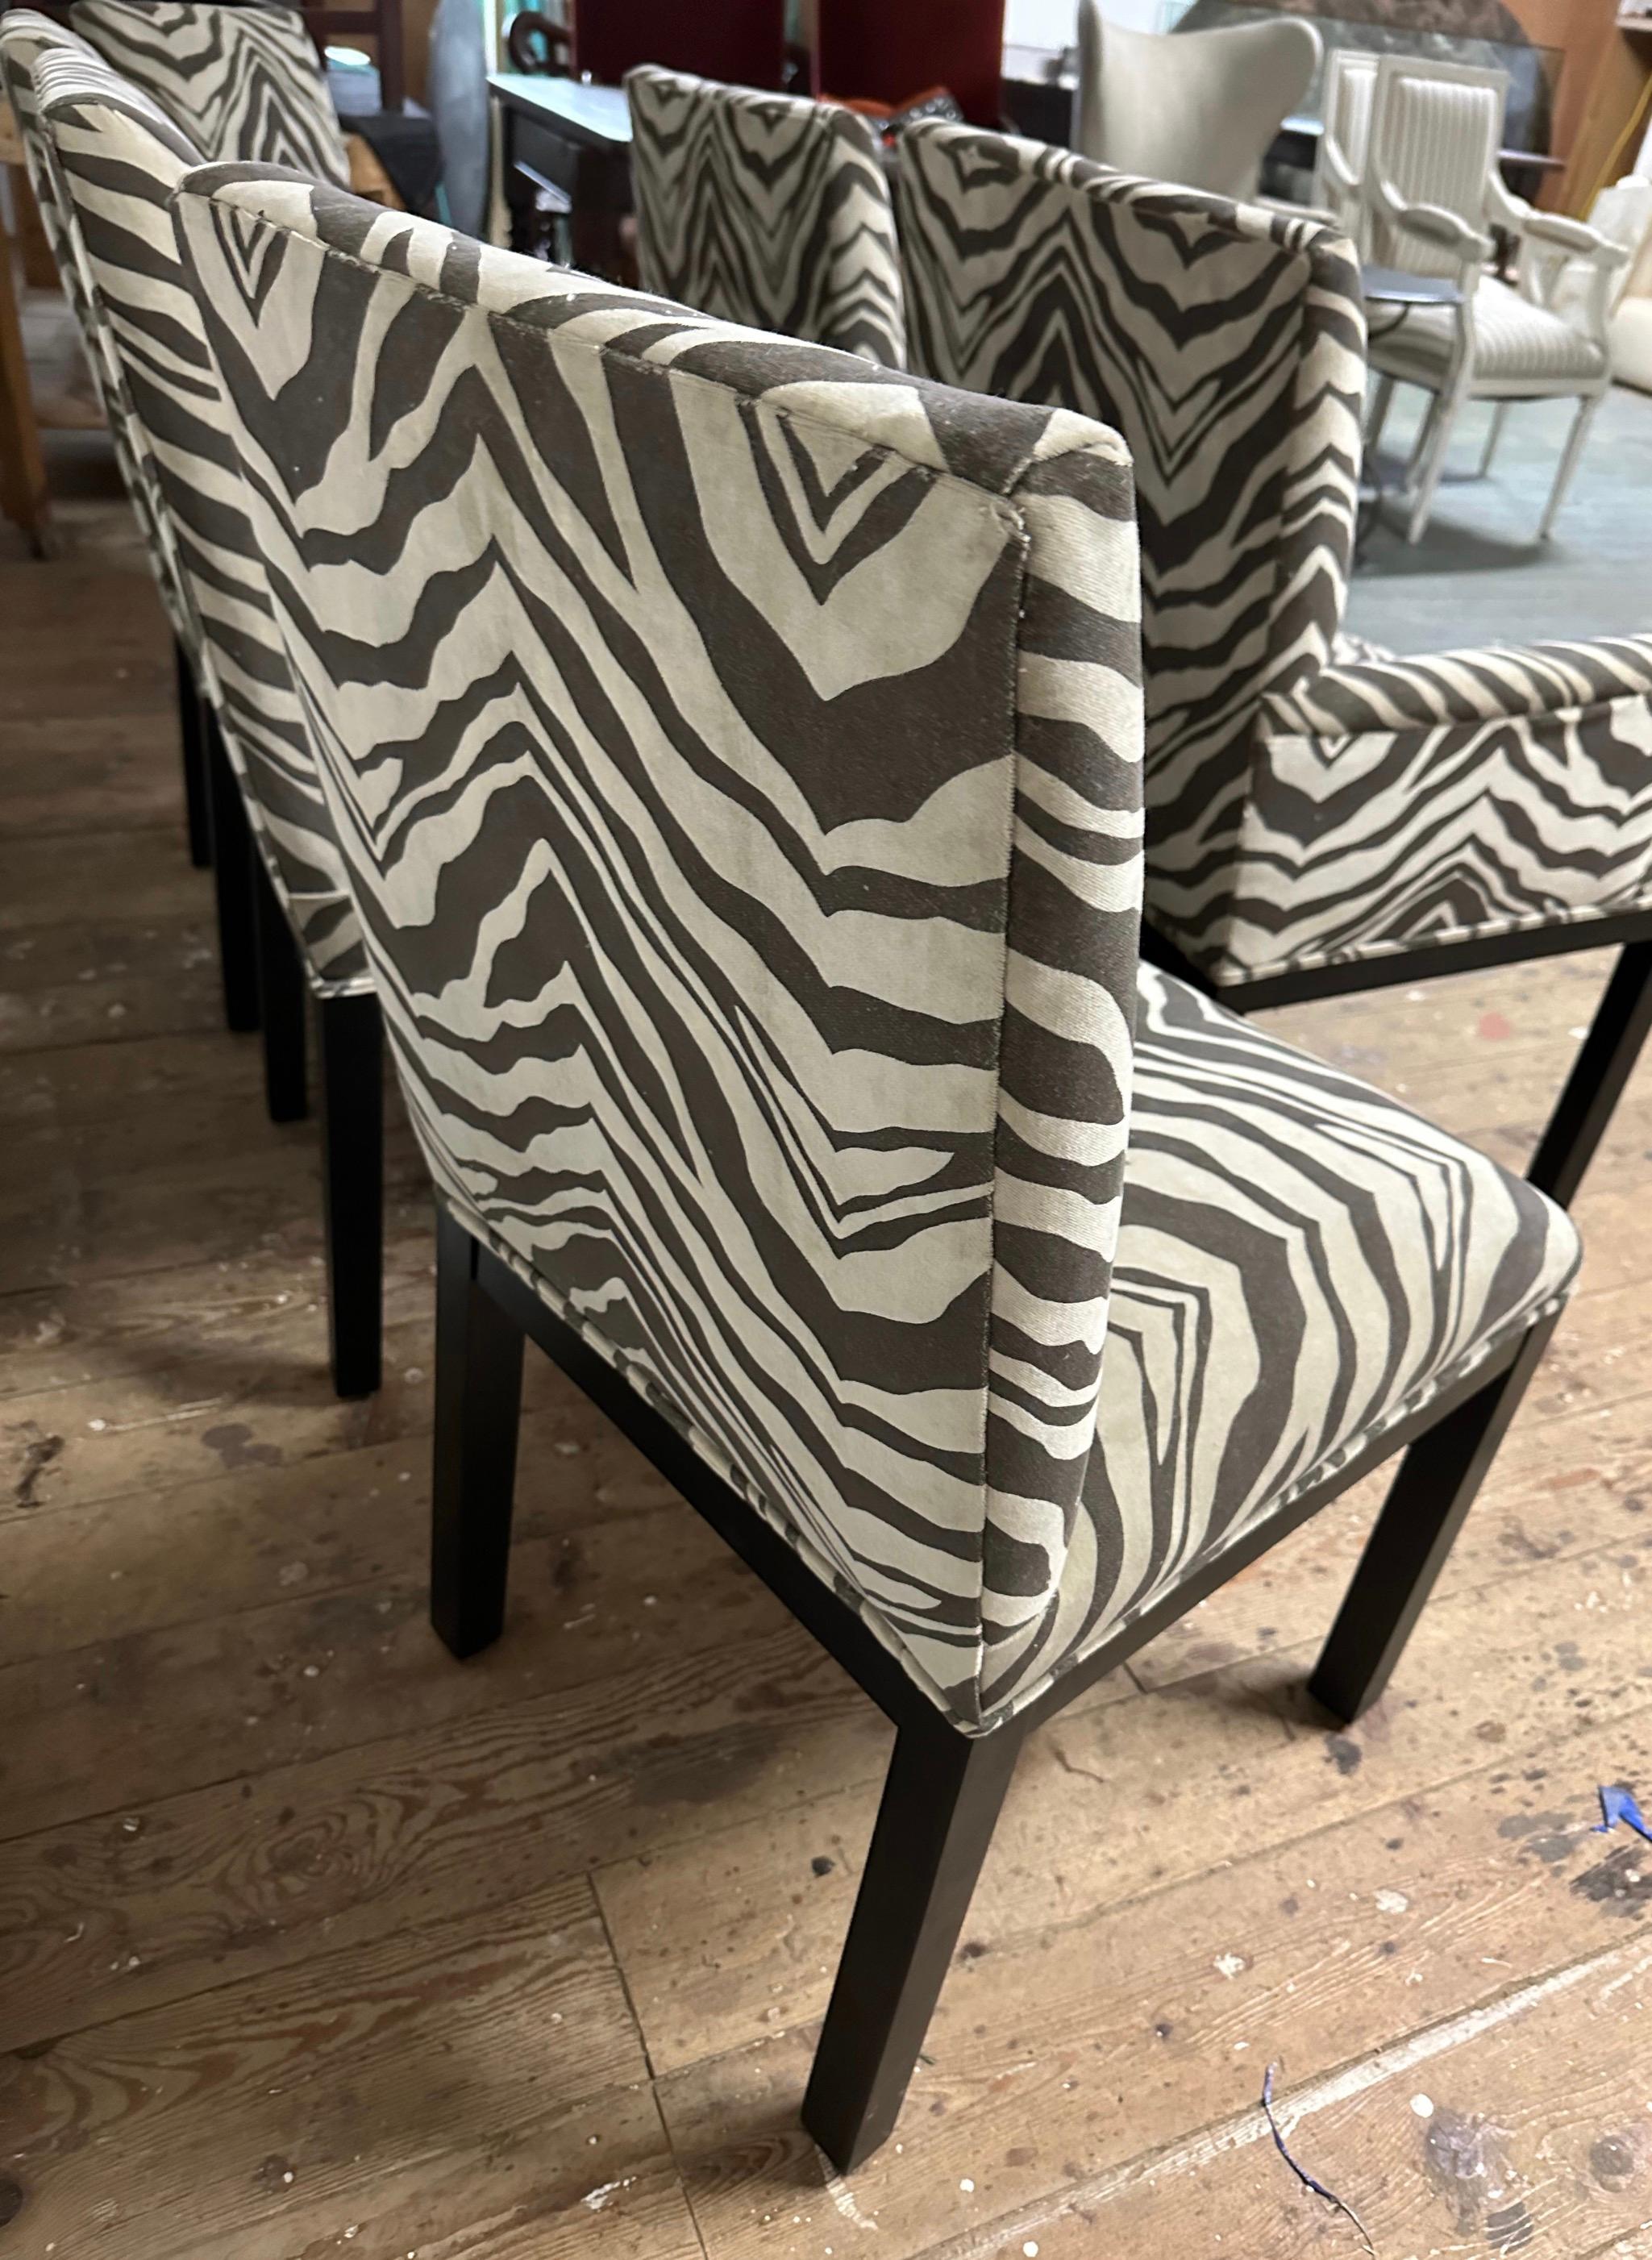 Dans le style de Milo Baughman, cet ensemble simple et moderne de 6 chaises de salle à manger Parsons classiques a été récemment remis à neuf et recouvert d'un tissu zébré en velours. Les chaises ont une structure en bois massif ébonisé avec des